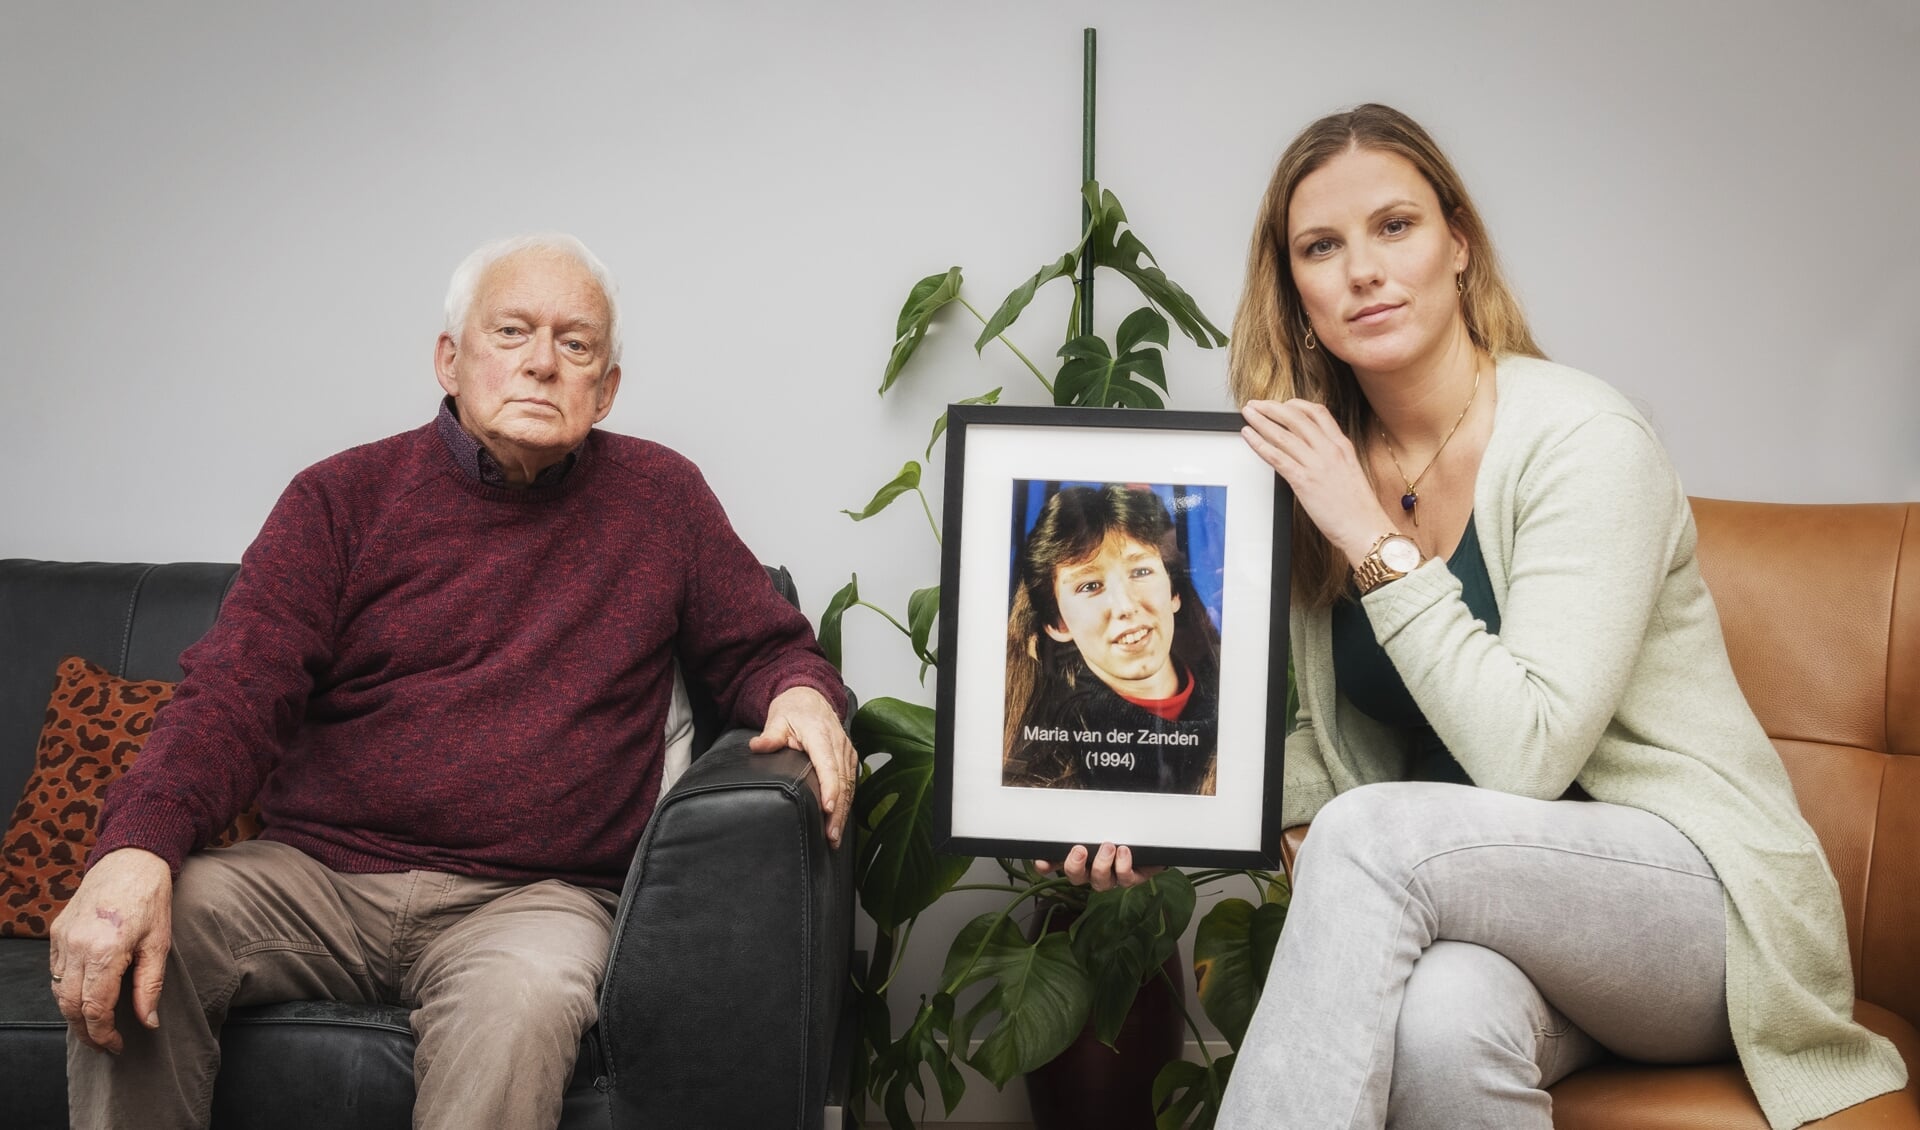 Vader Ab van der Zanden en Kelly de Vries met een foto uit 1994 van de vermiste Maria van der Zanden. Ze was toen 22 jaar. Kelly is directeur van de Peter R. de Vries Foundation.